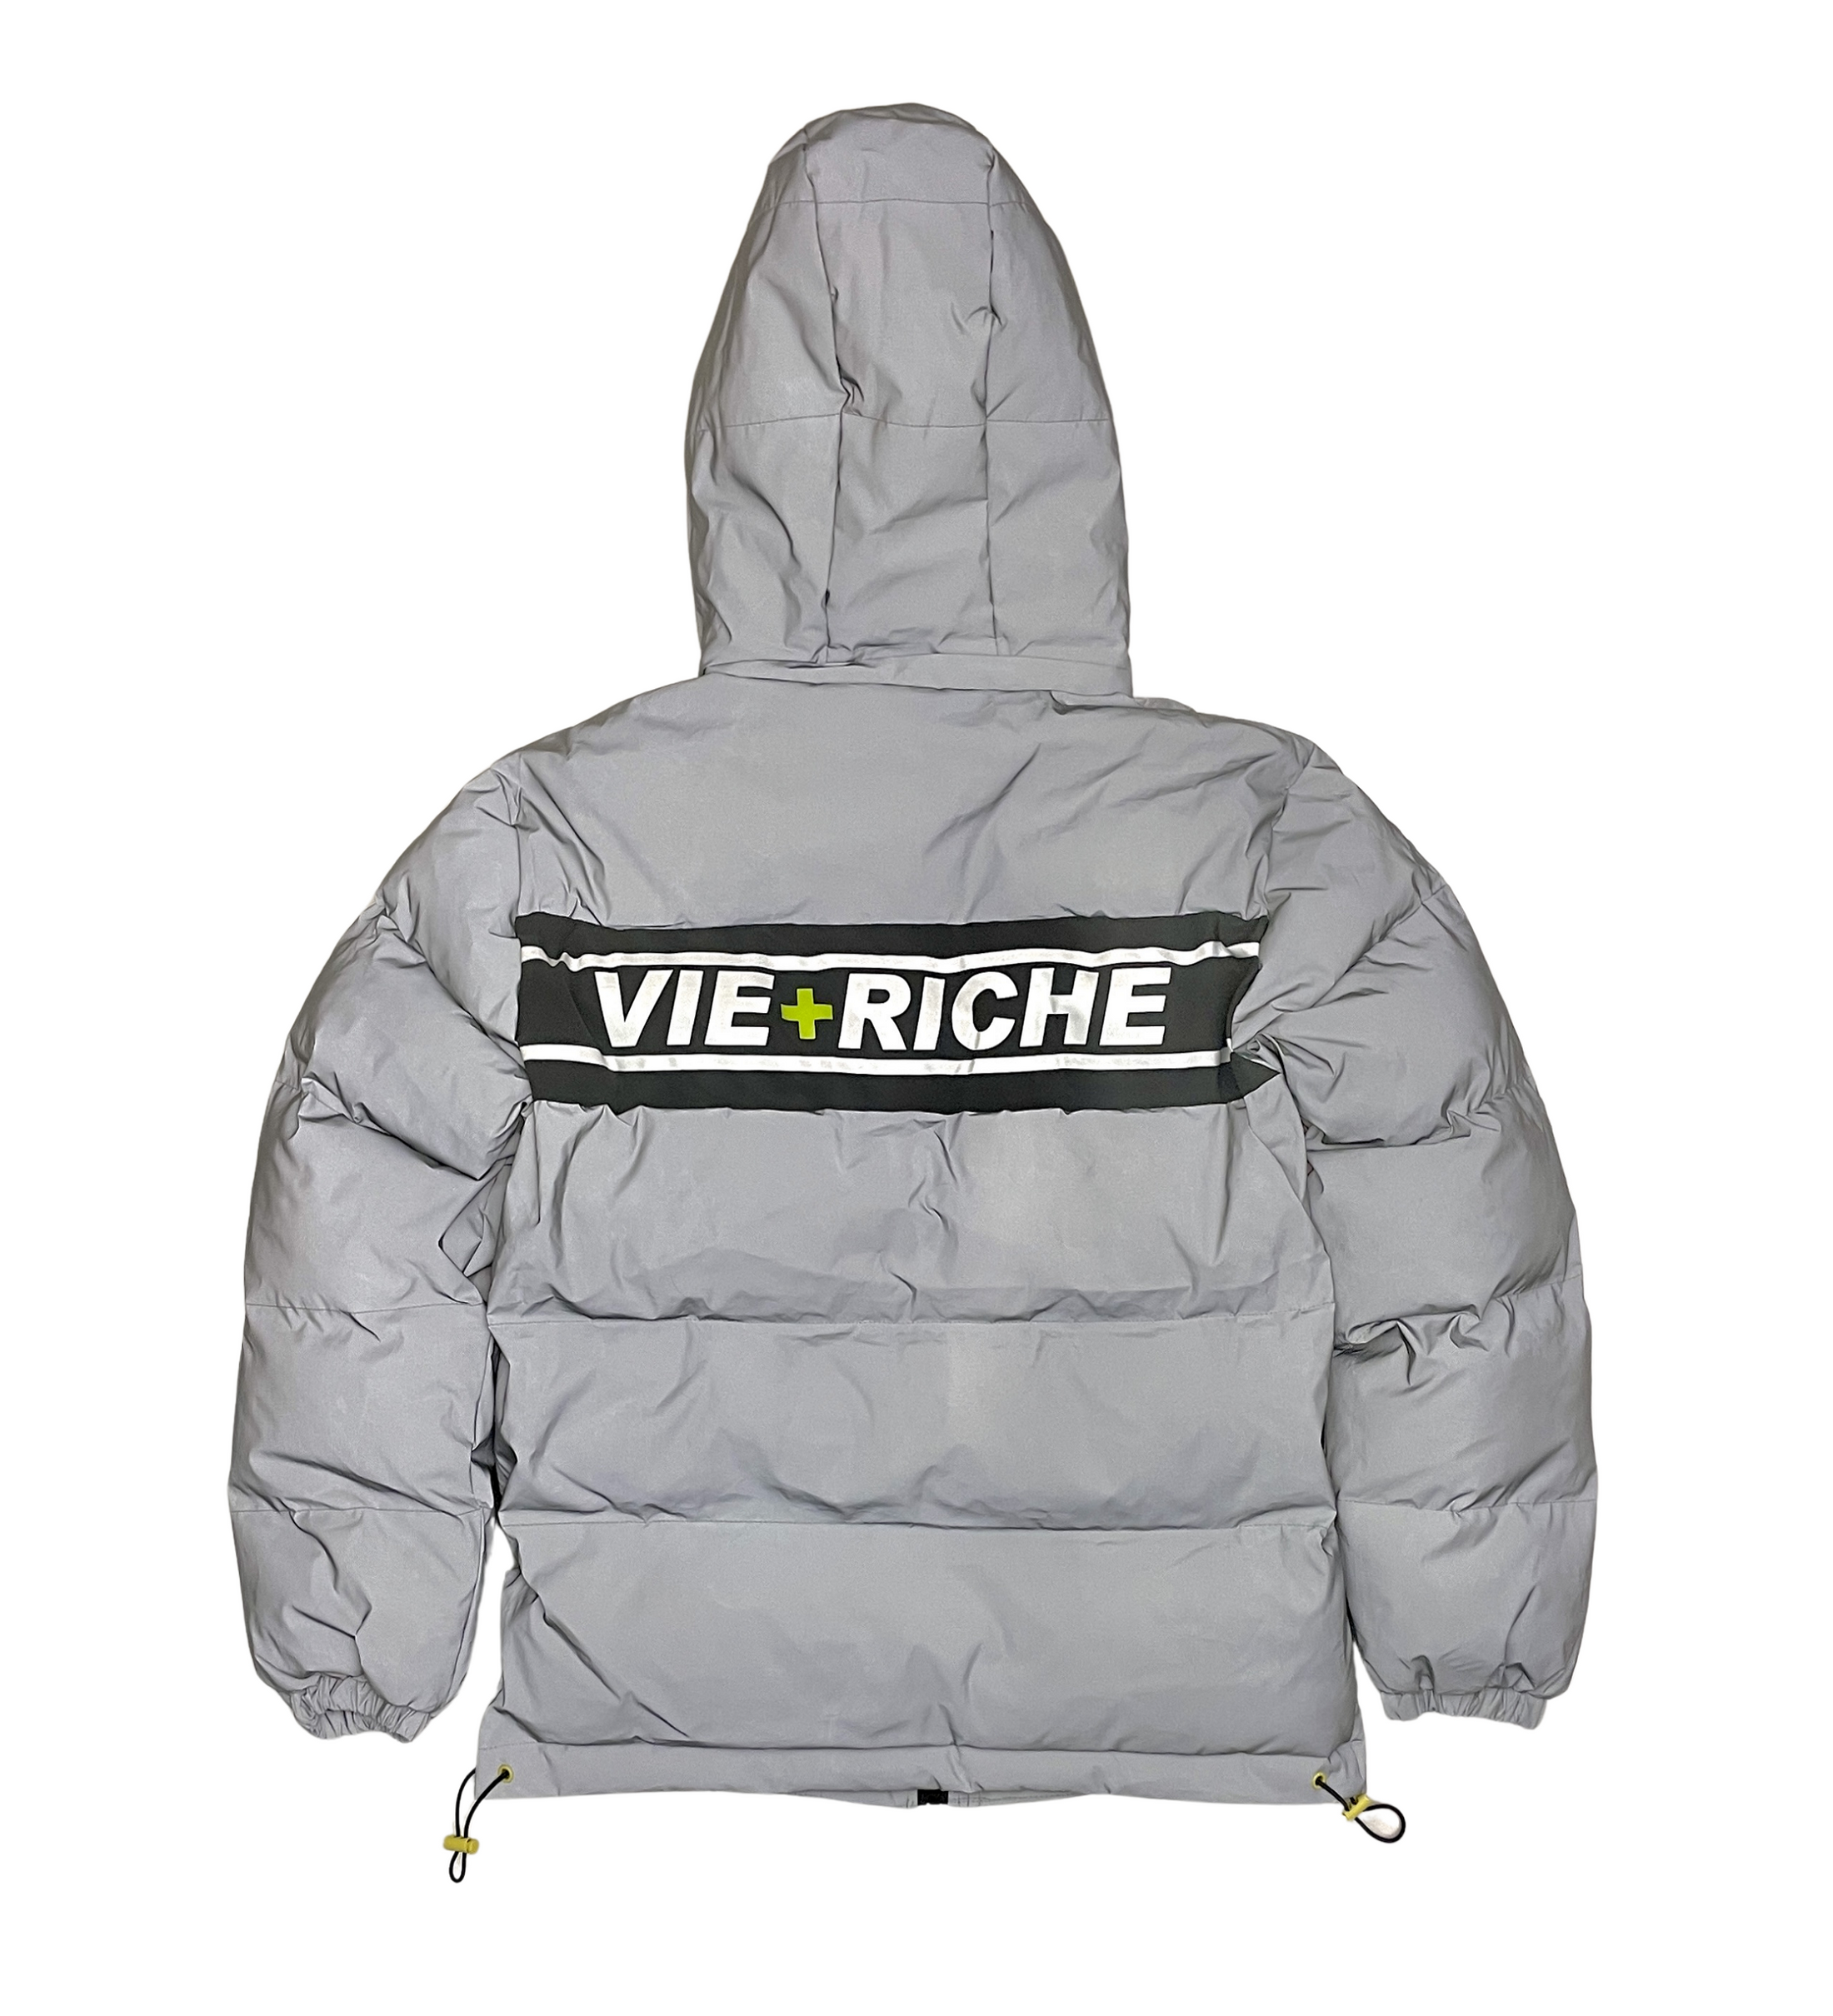 Vie Riche 3M Reflective Bubble Jacket